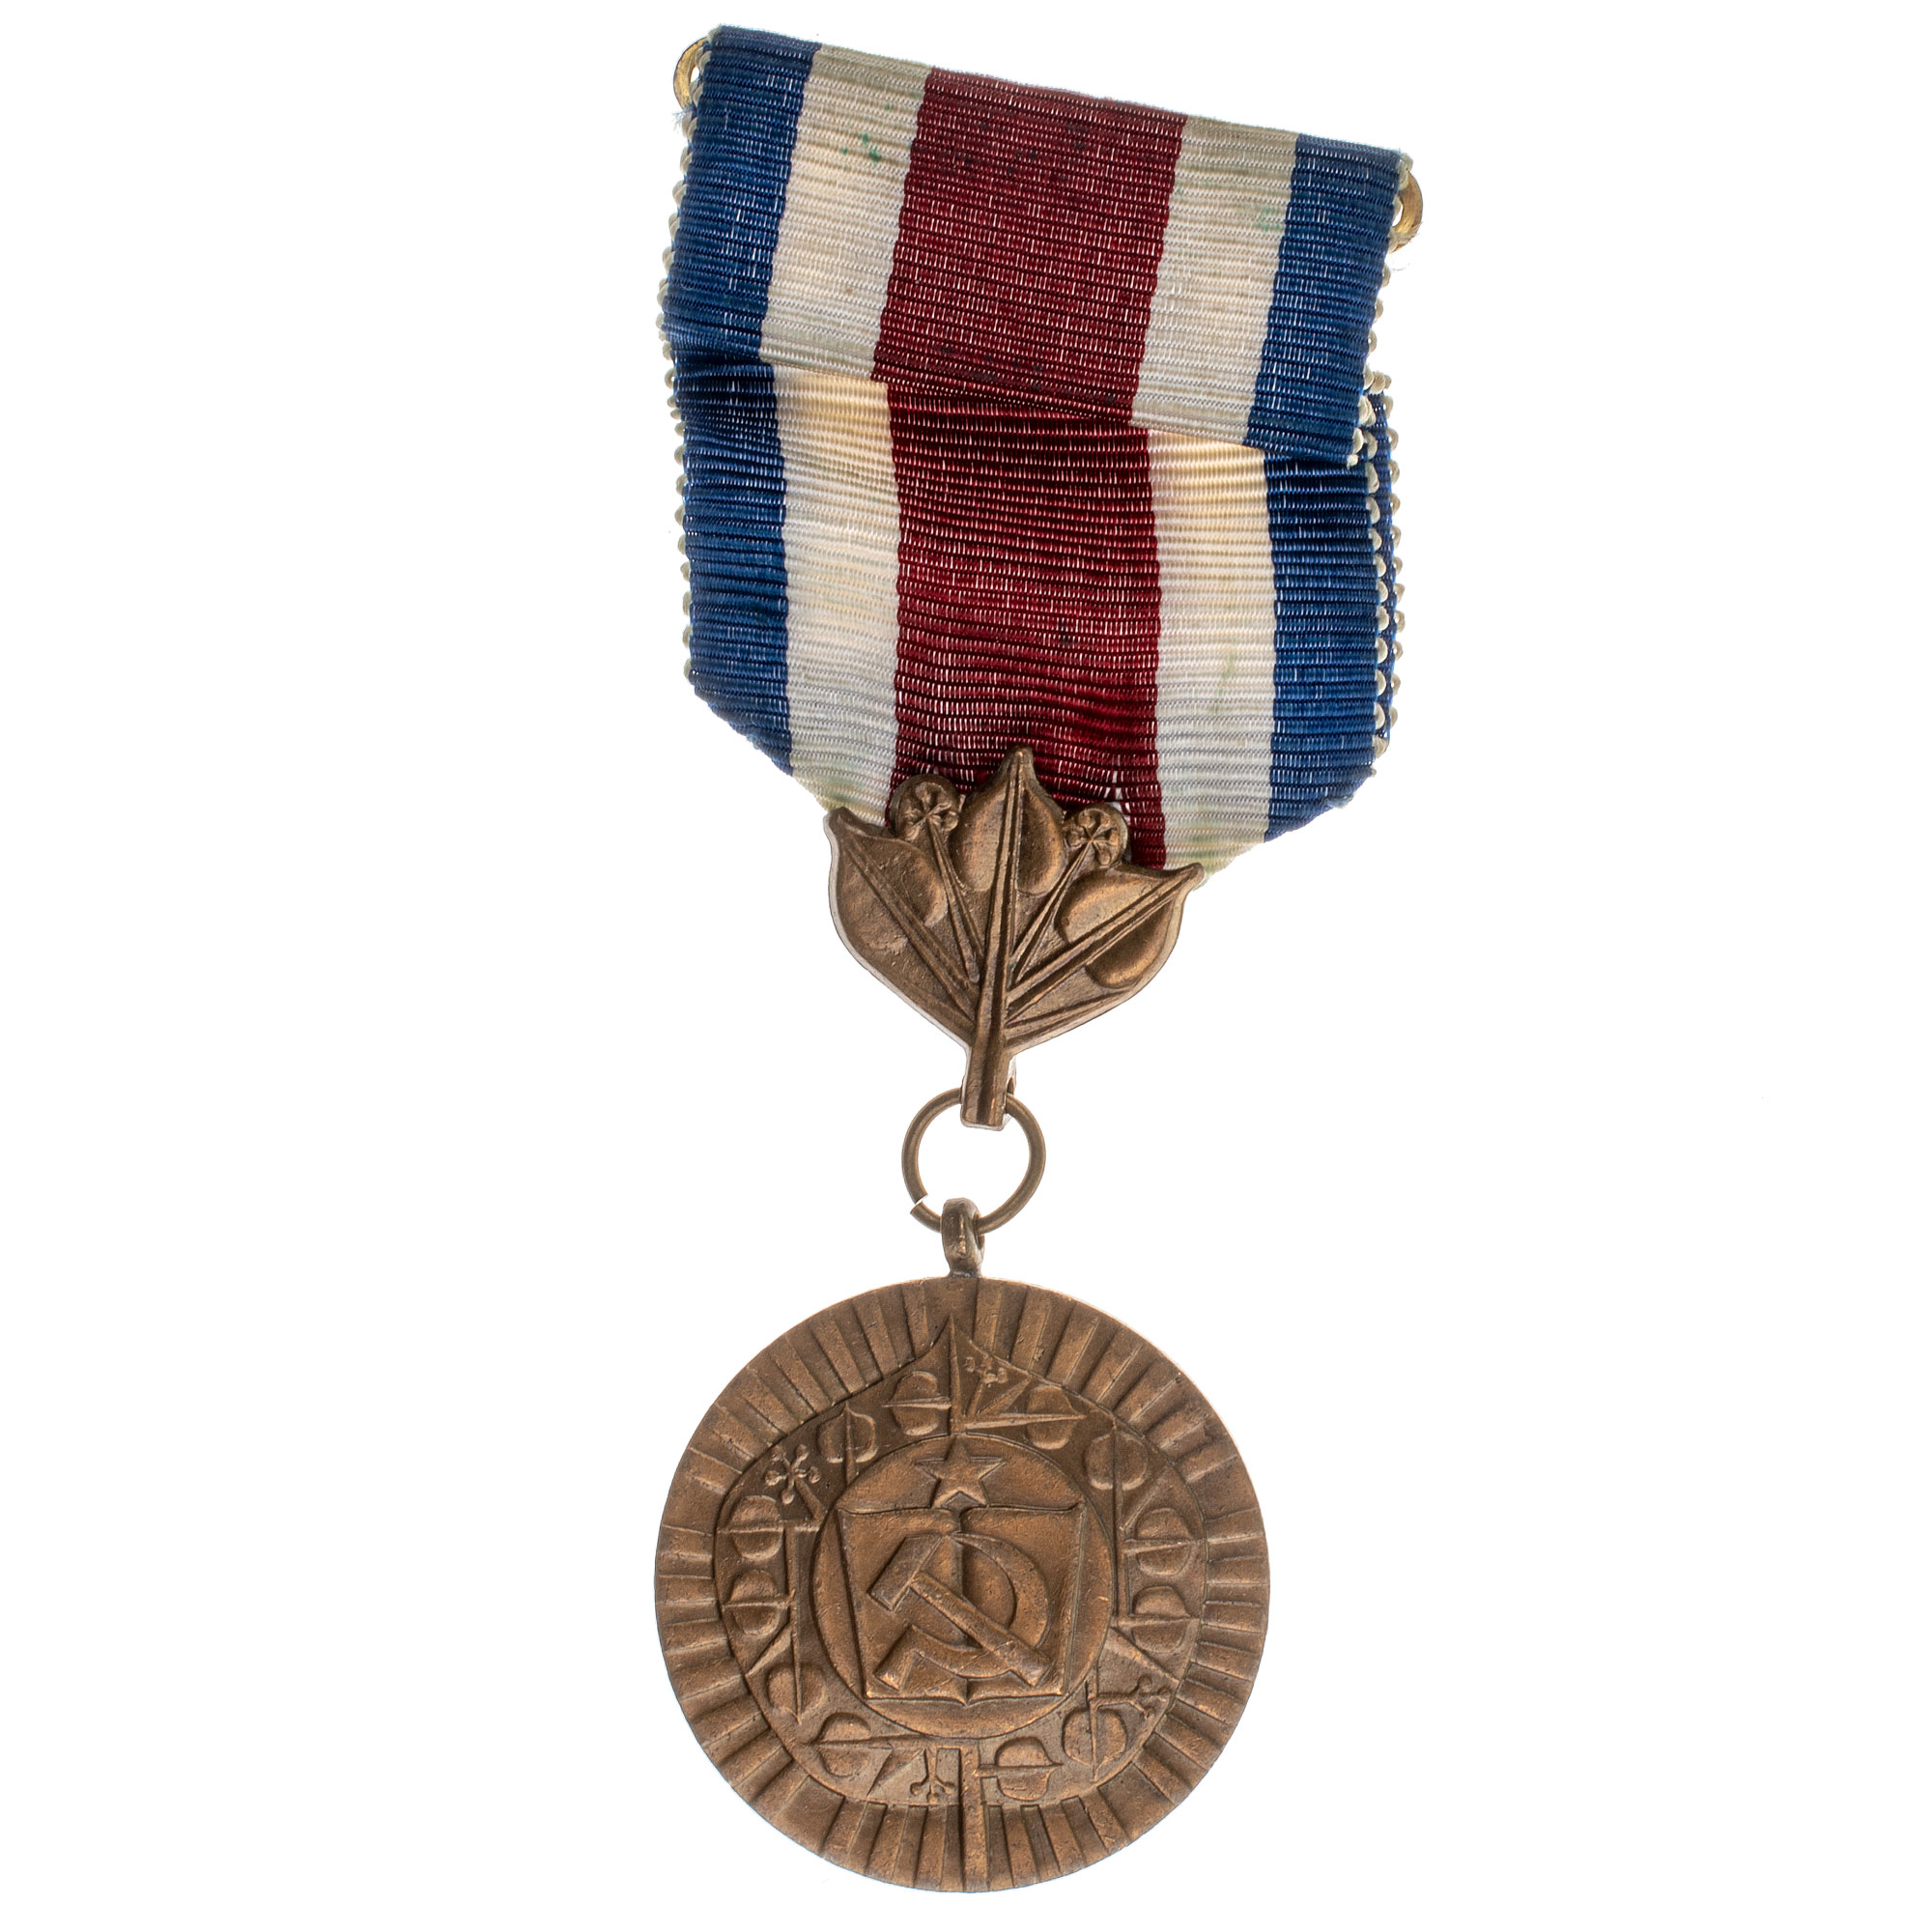 Чехословакия. Медаль "За доблестный труд при социализме".